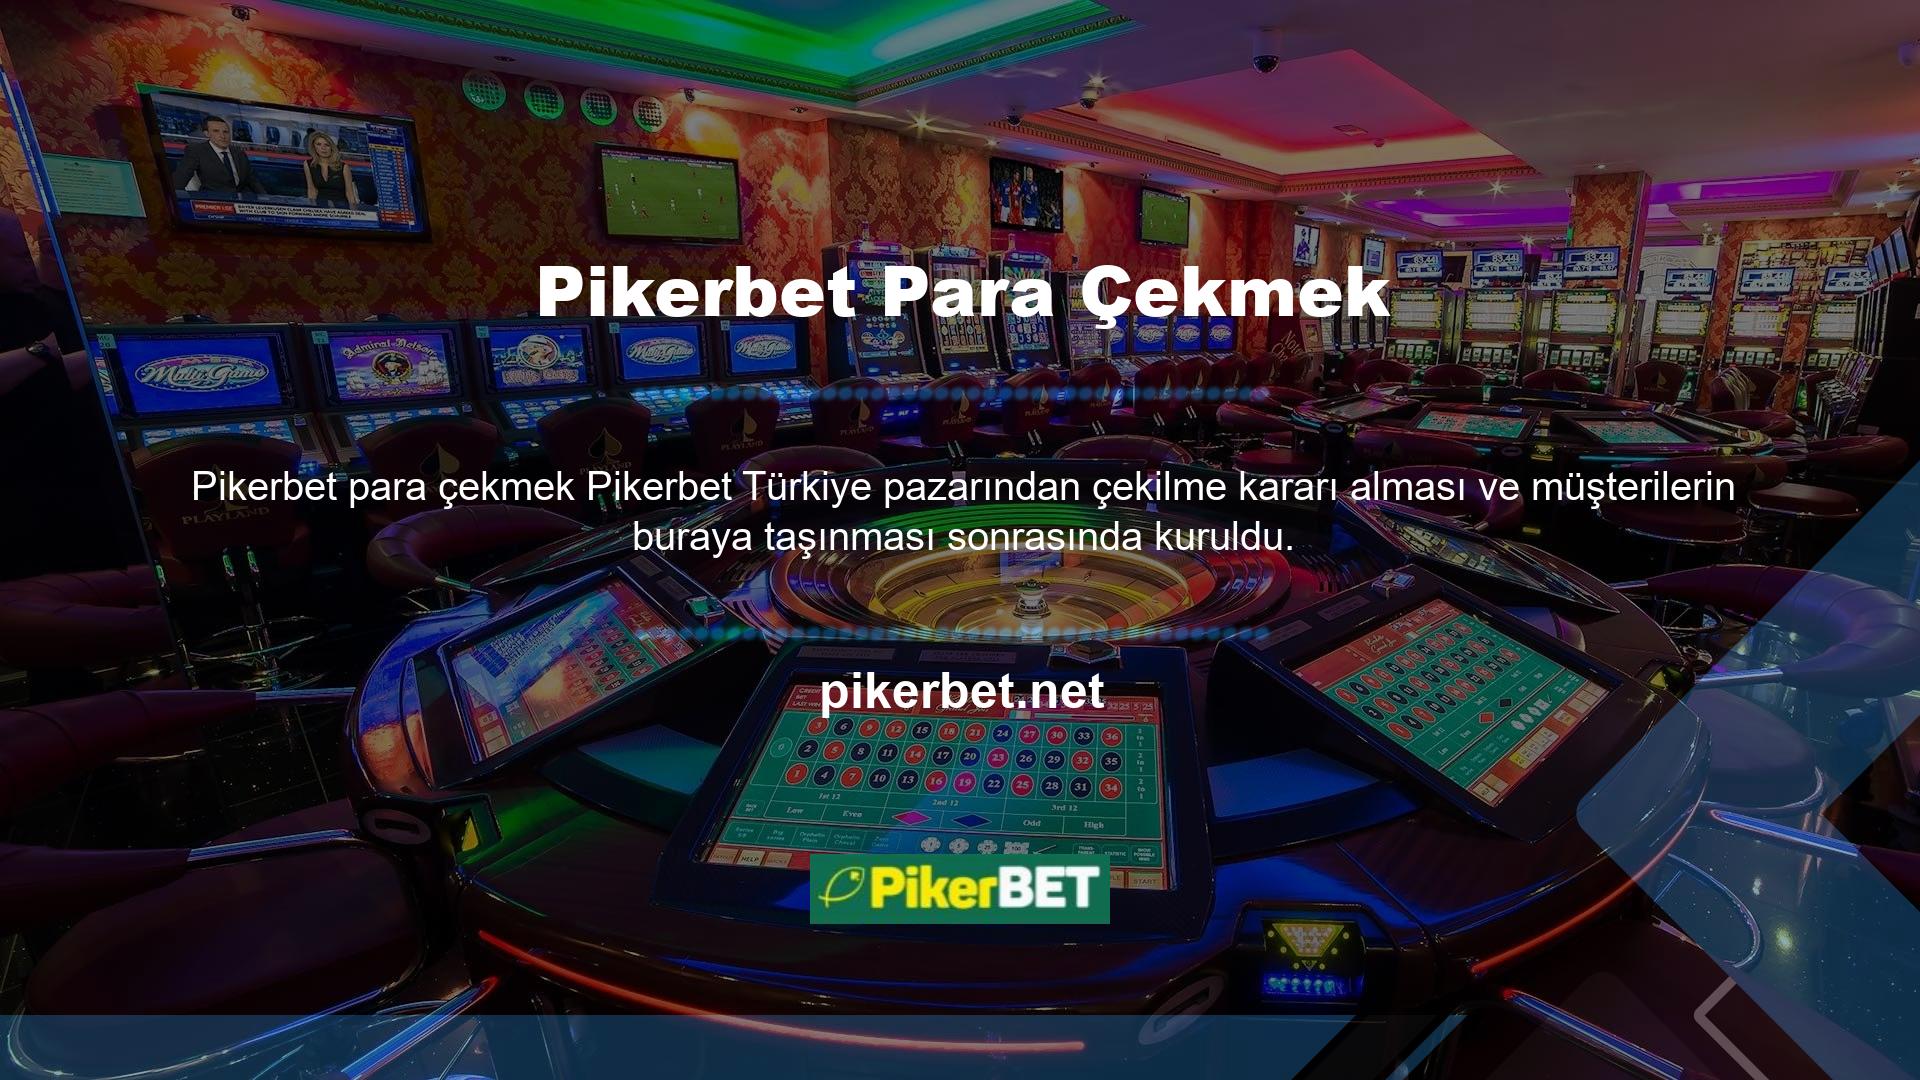 Şu anda tüm Pikerbet müşterileri Pikerbet oyun sitesine yönlendirilmektedir